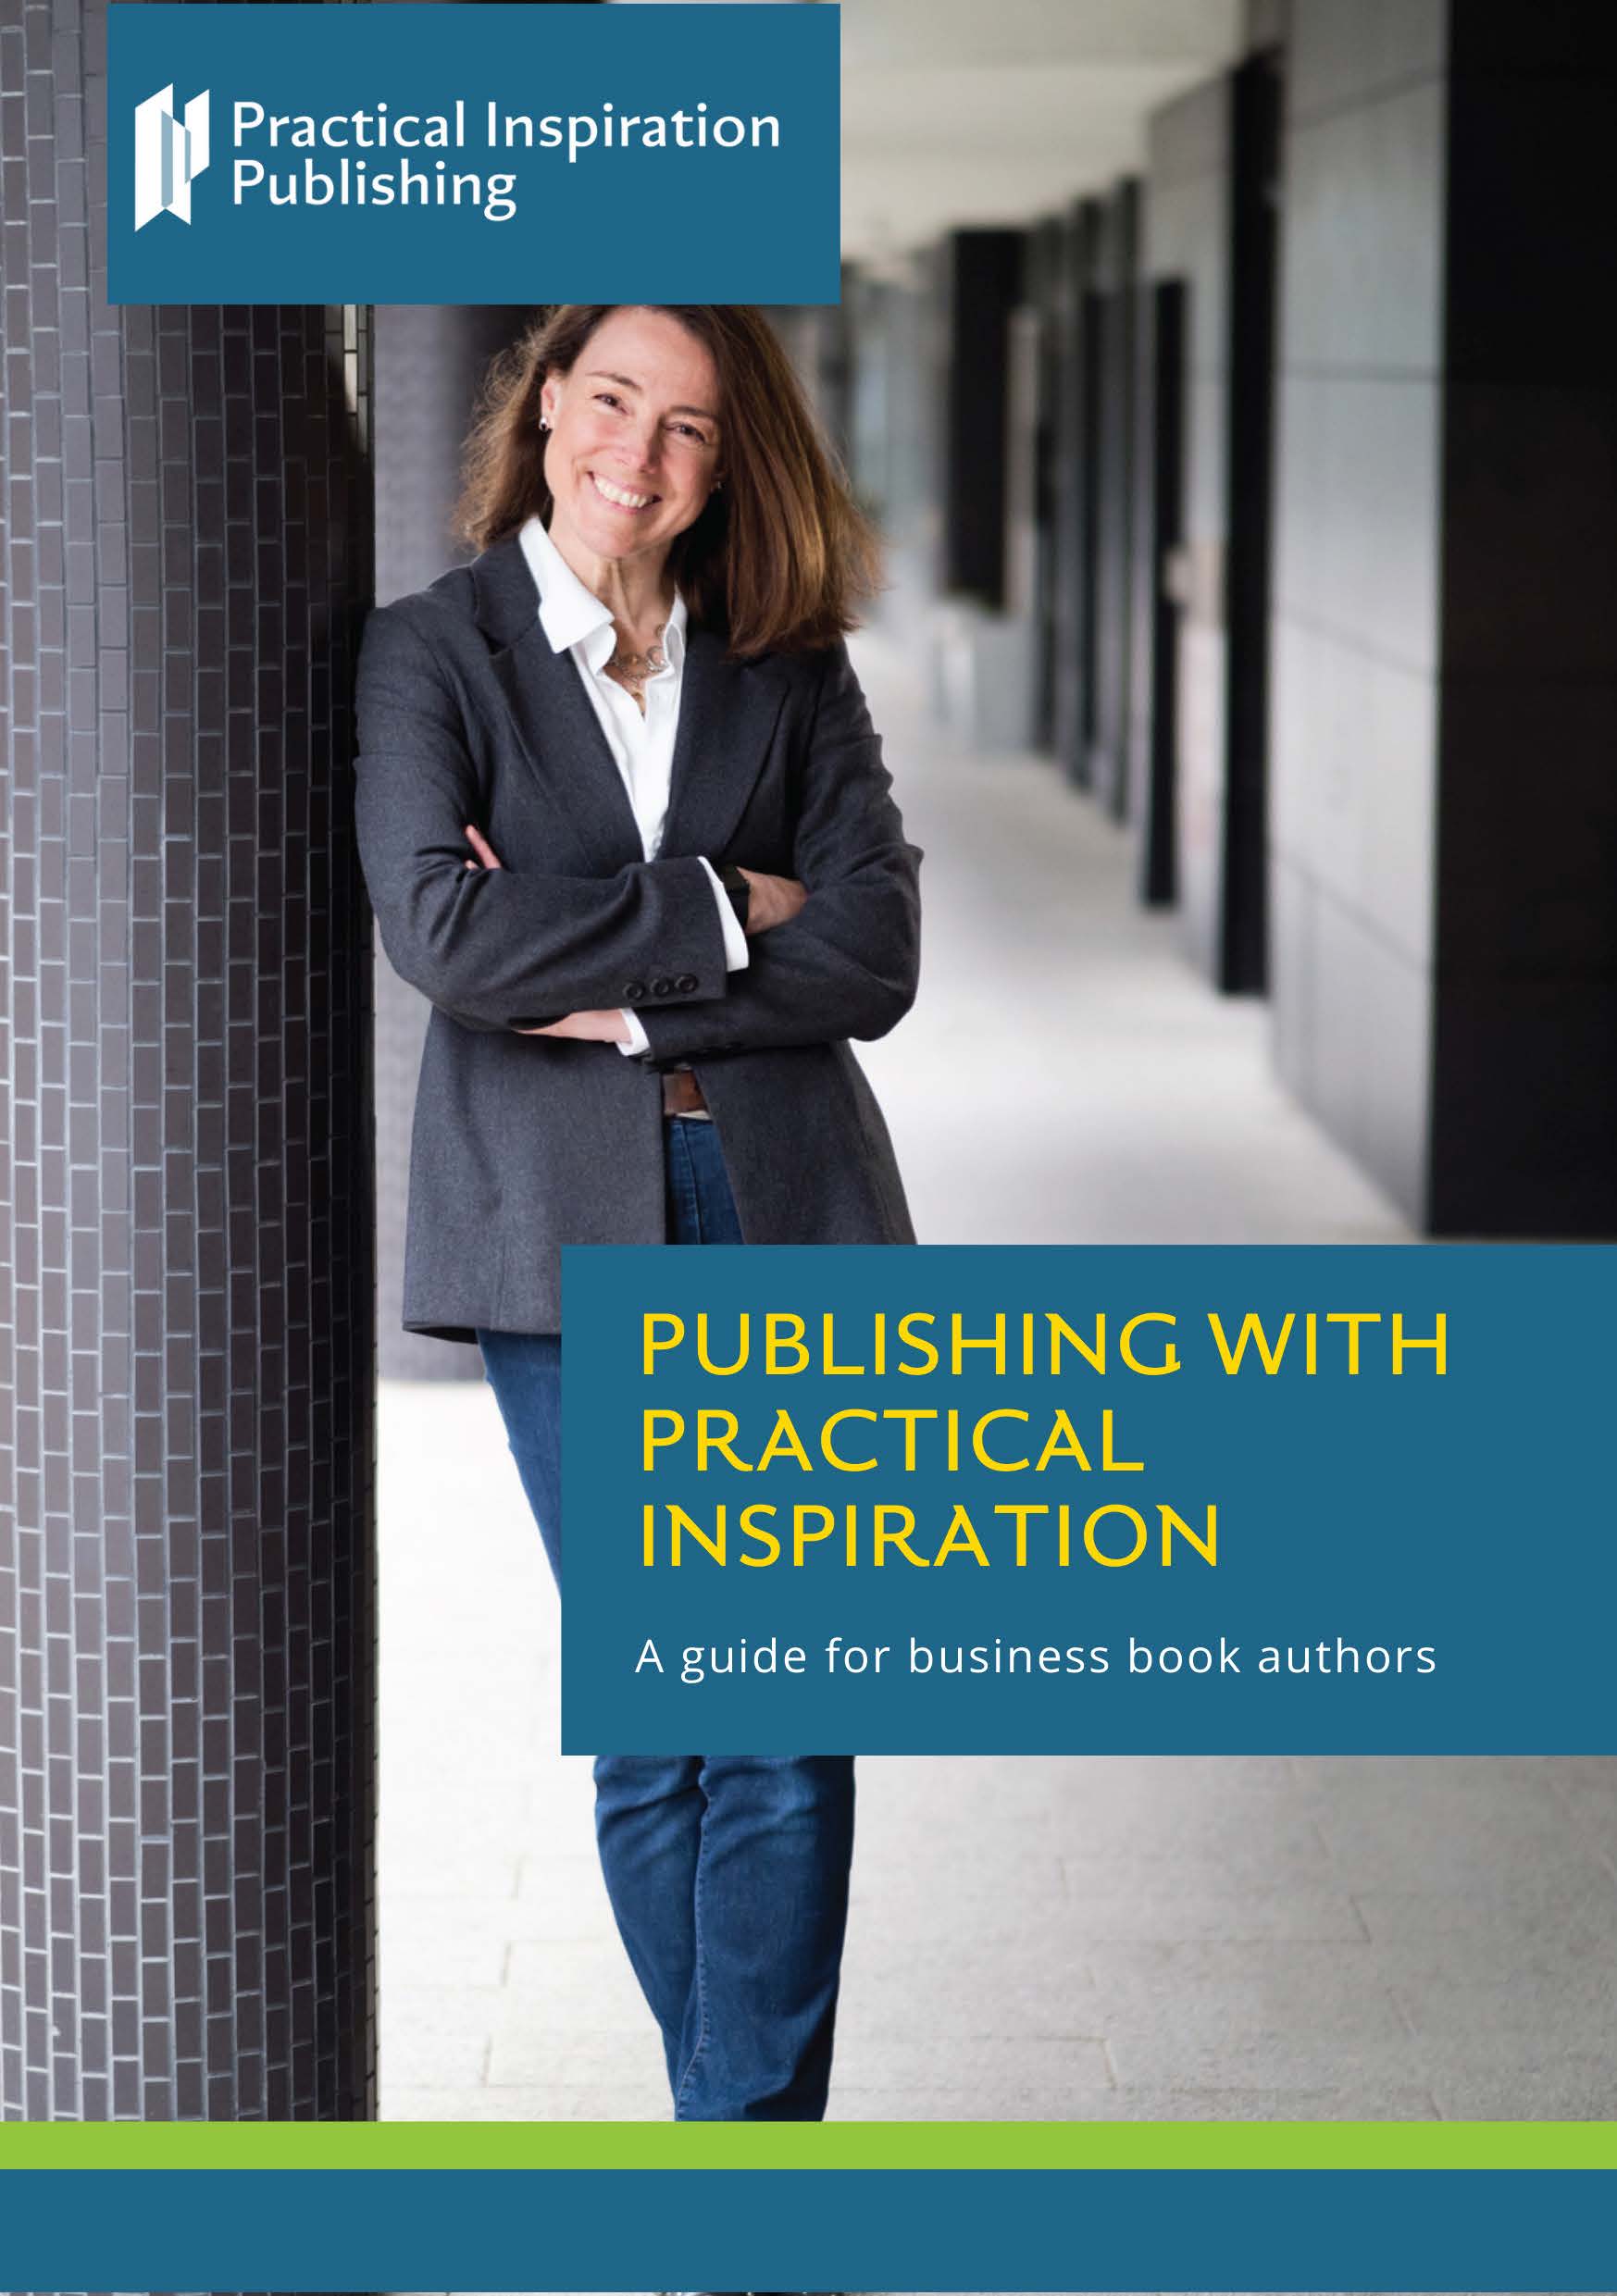 PI author brochure cover